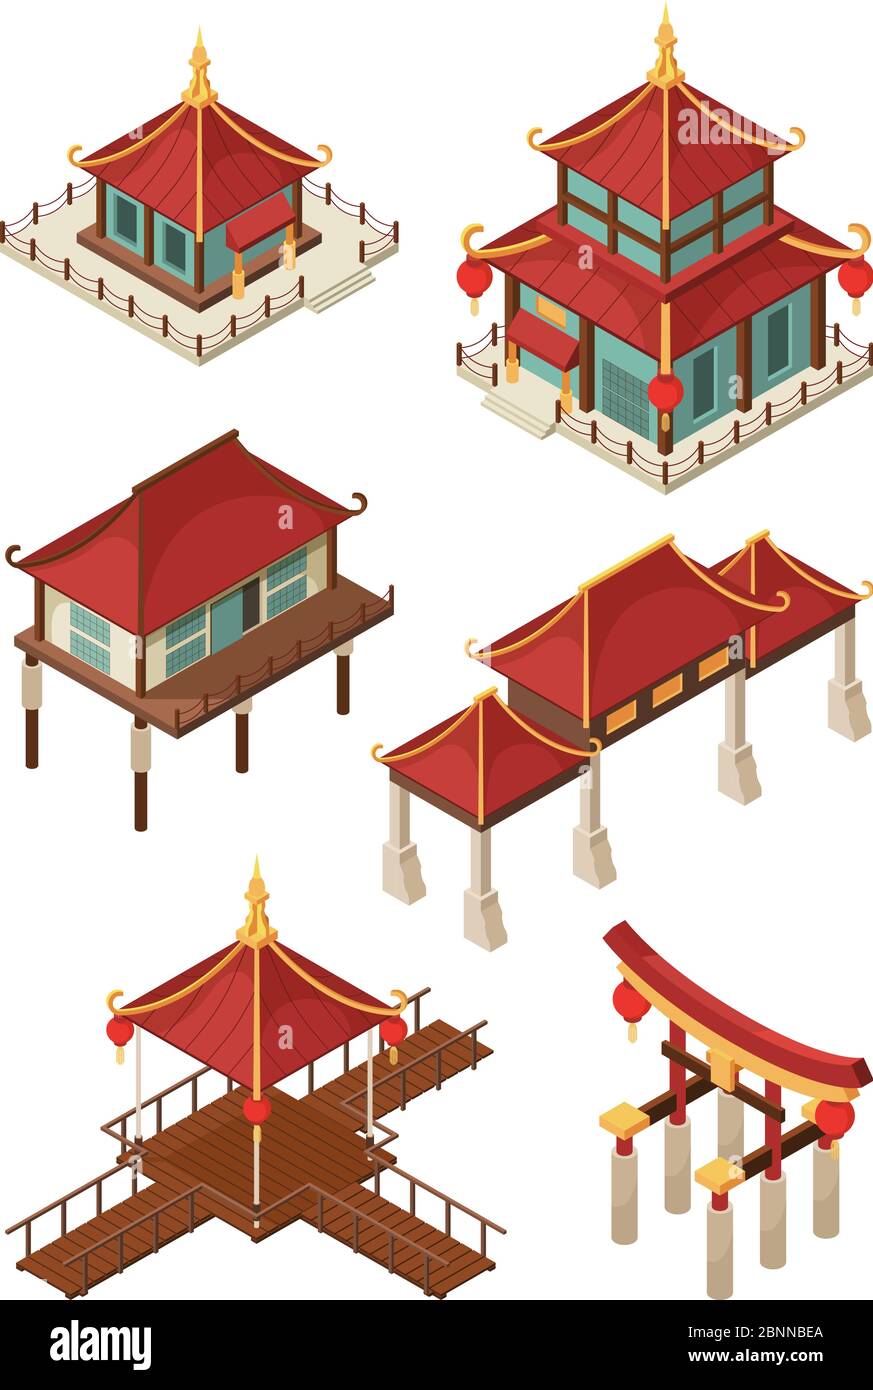 Architecture asiatique isométrique. Les bâtiments traditionnels chinois et japonais abritent des illustrations 3d vectorielles Illustration de Vecteur